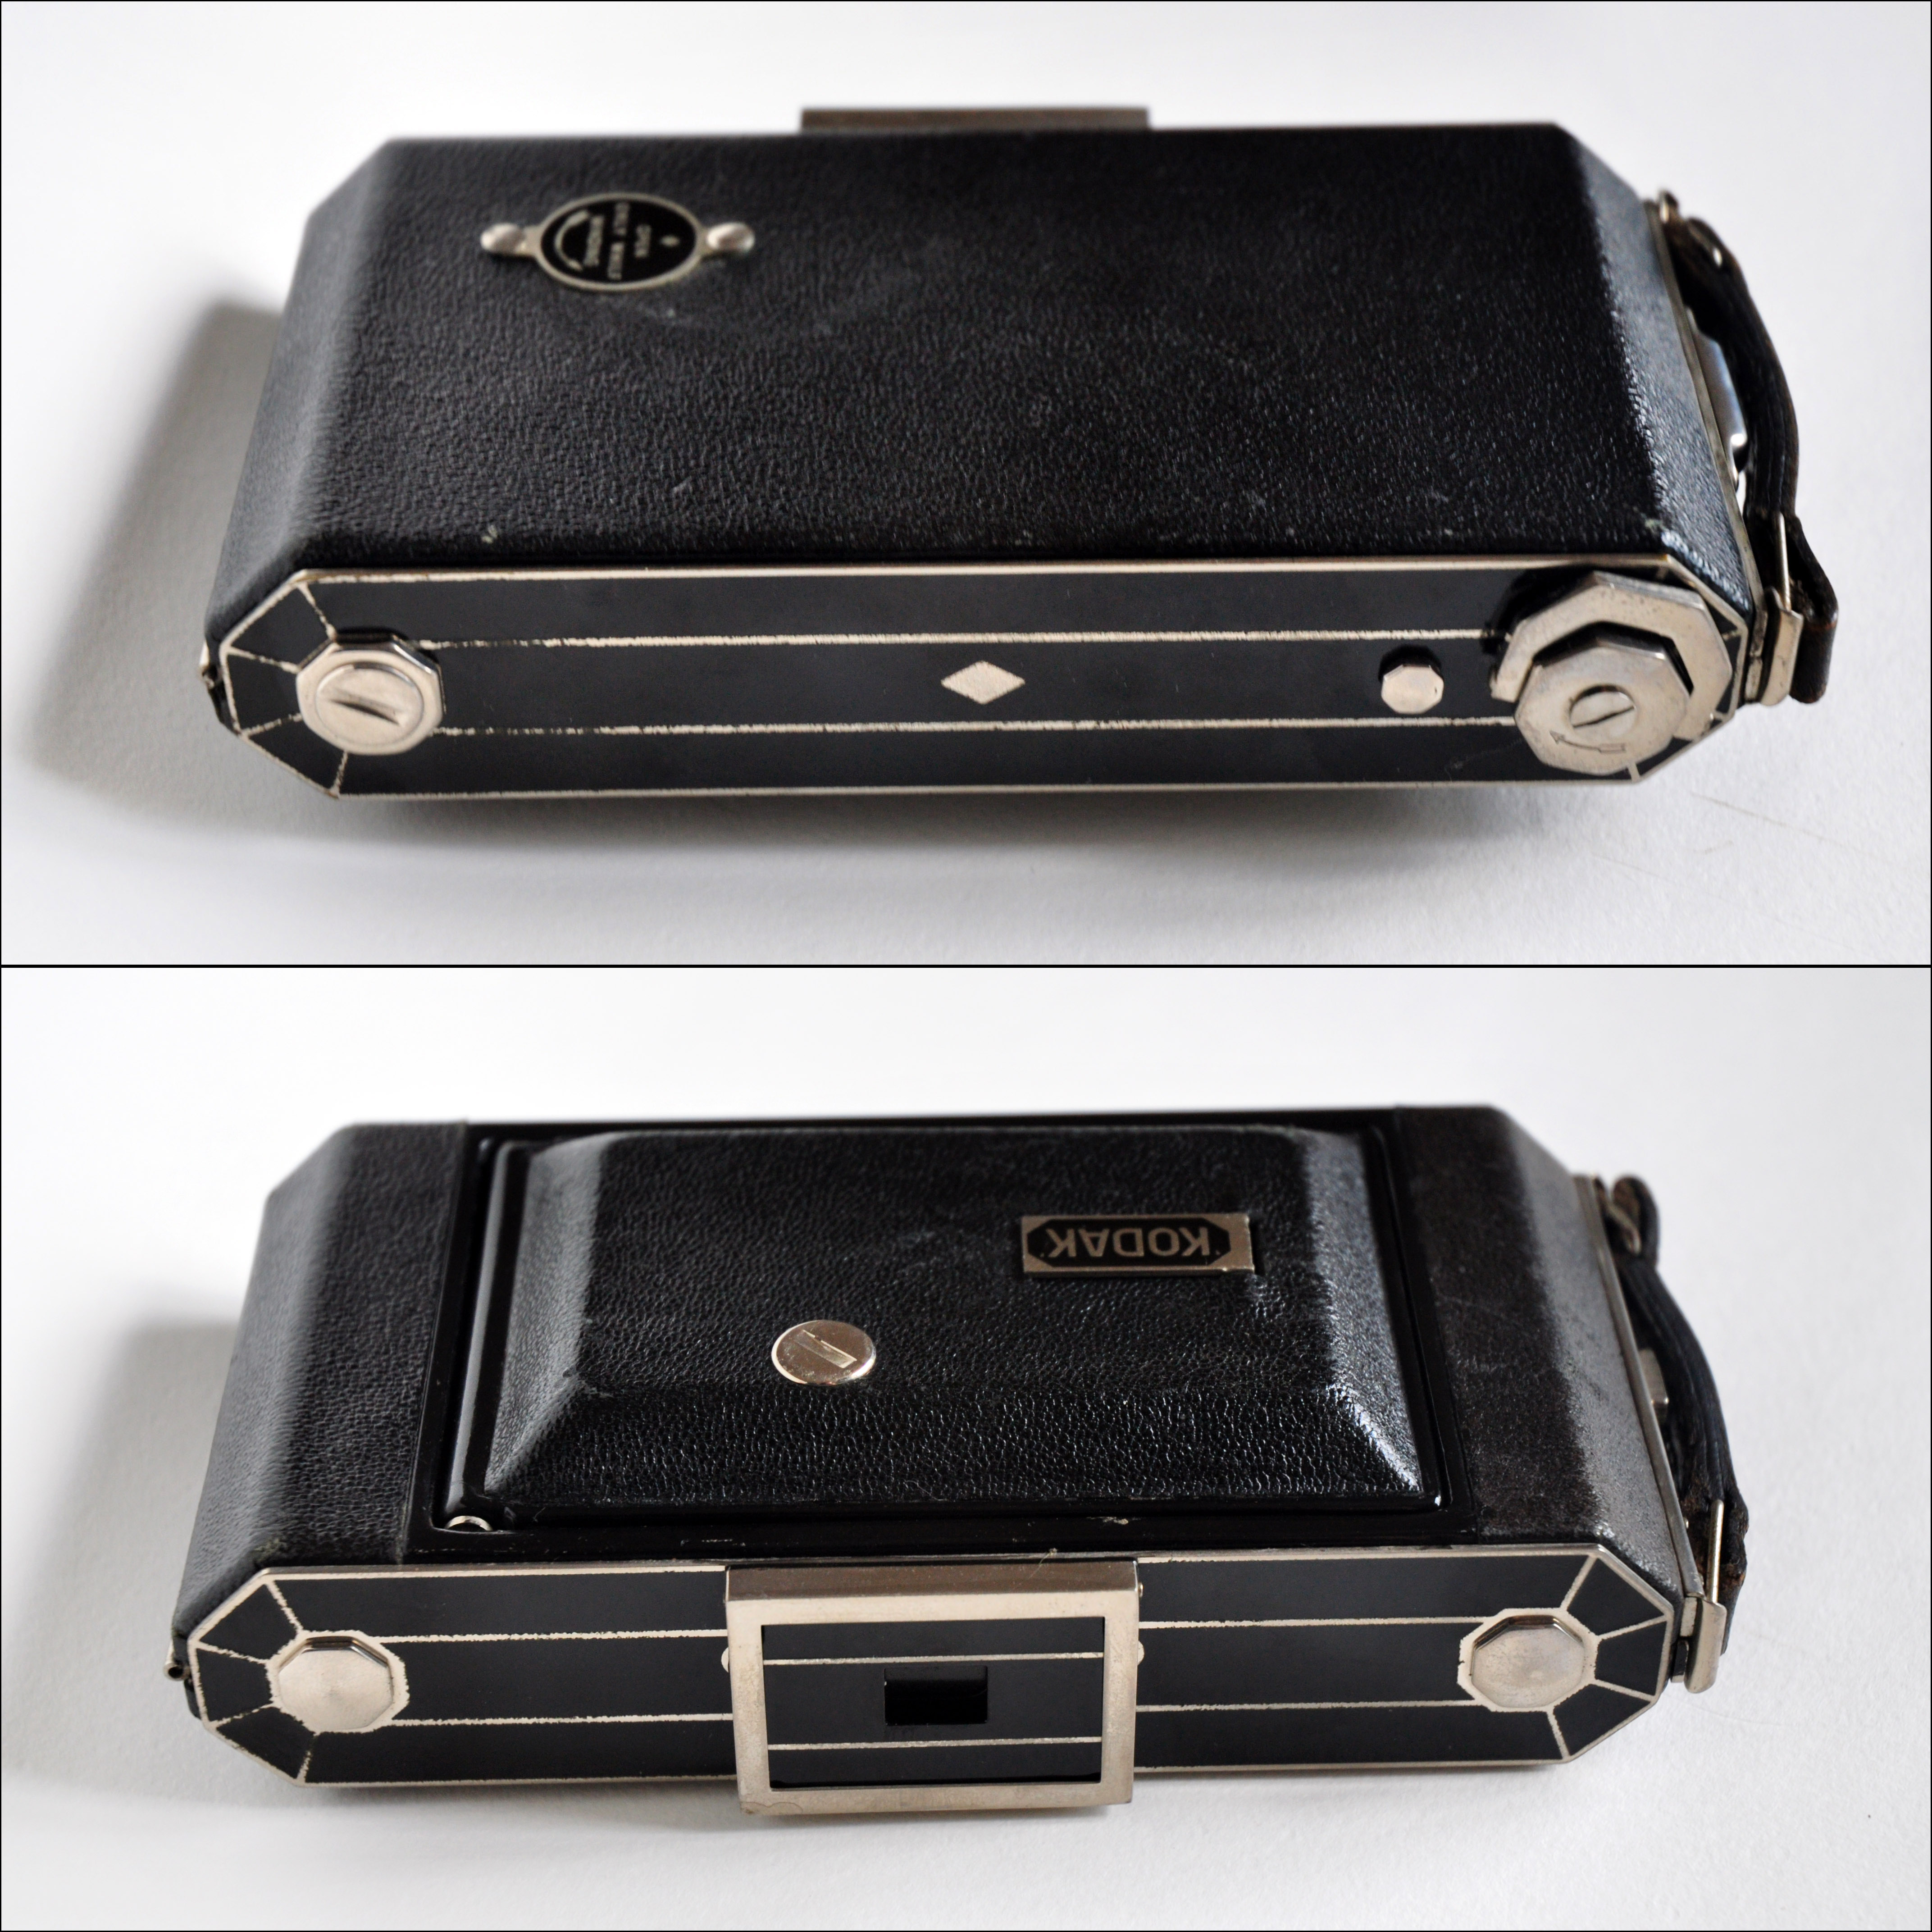 My Kodak Six-20 Model C folding camera, closed (4774873234)